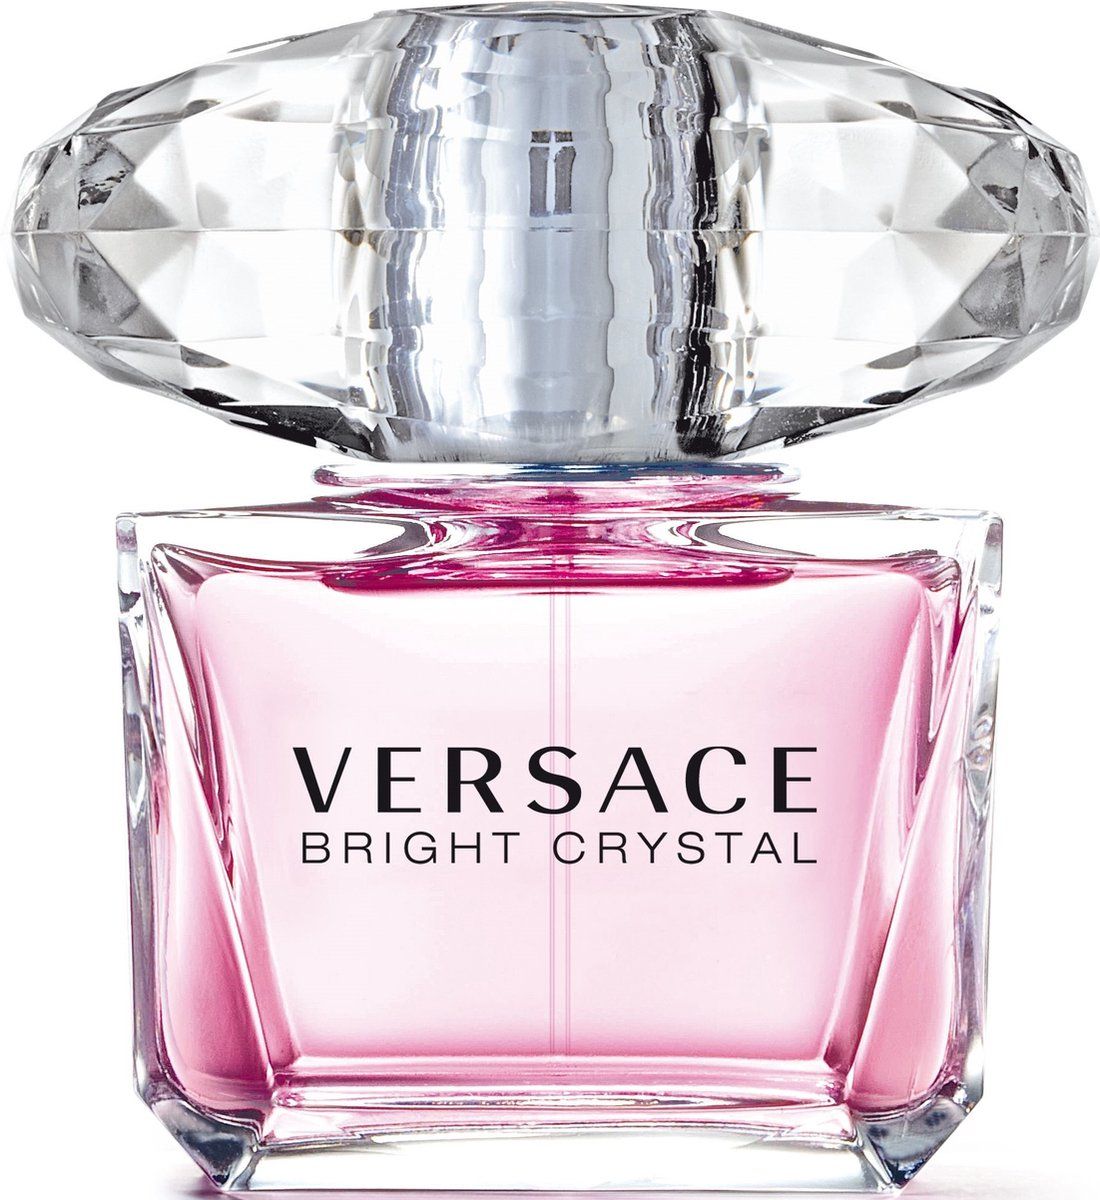 Versace Bright Crystal Eau de Toilette Spray 90 ml